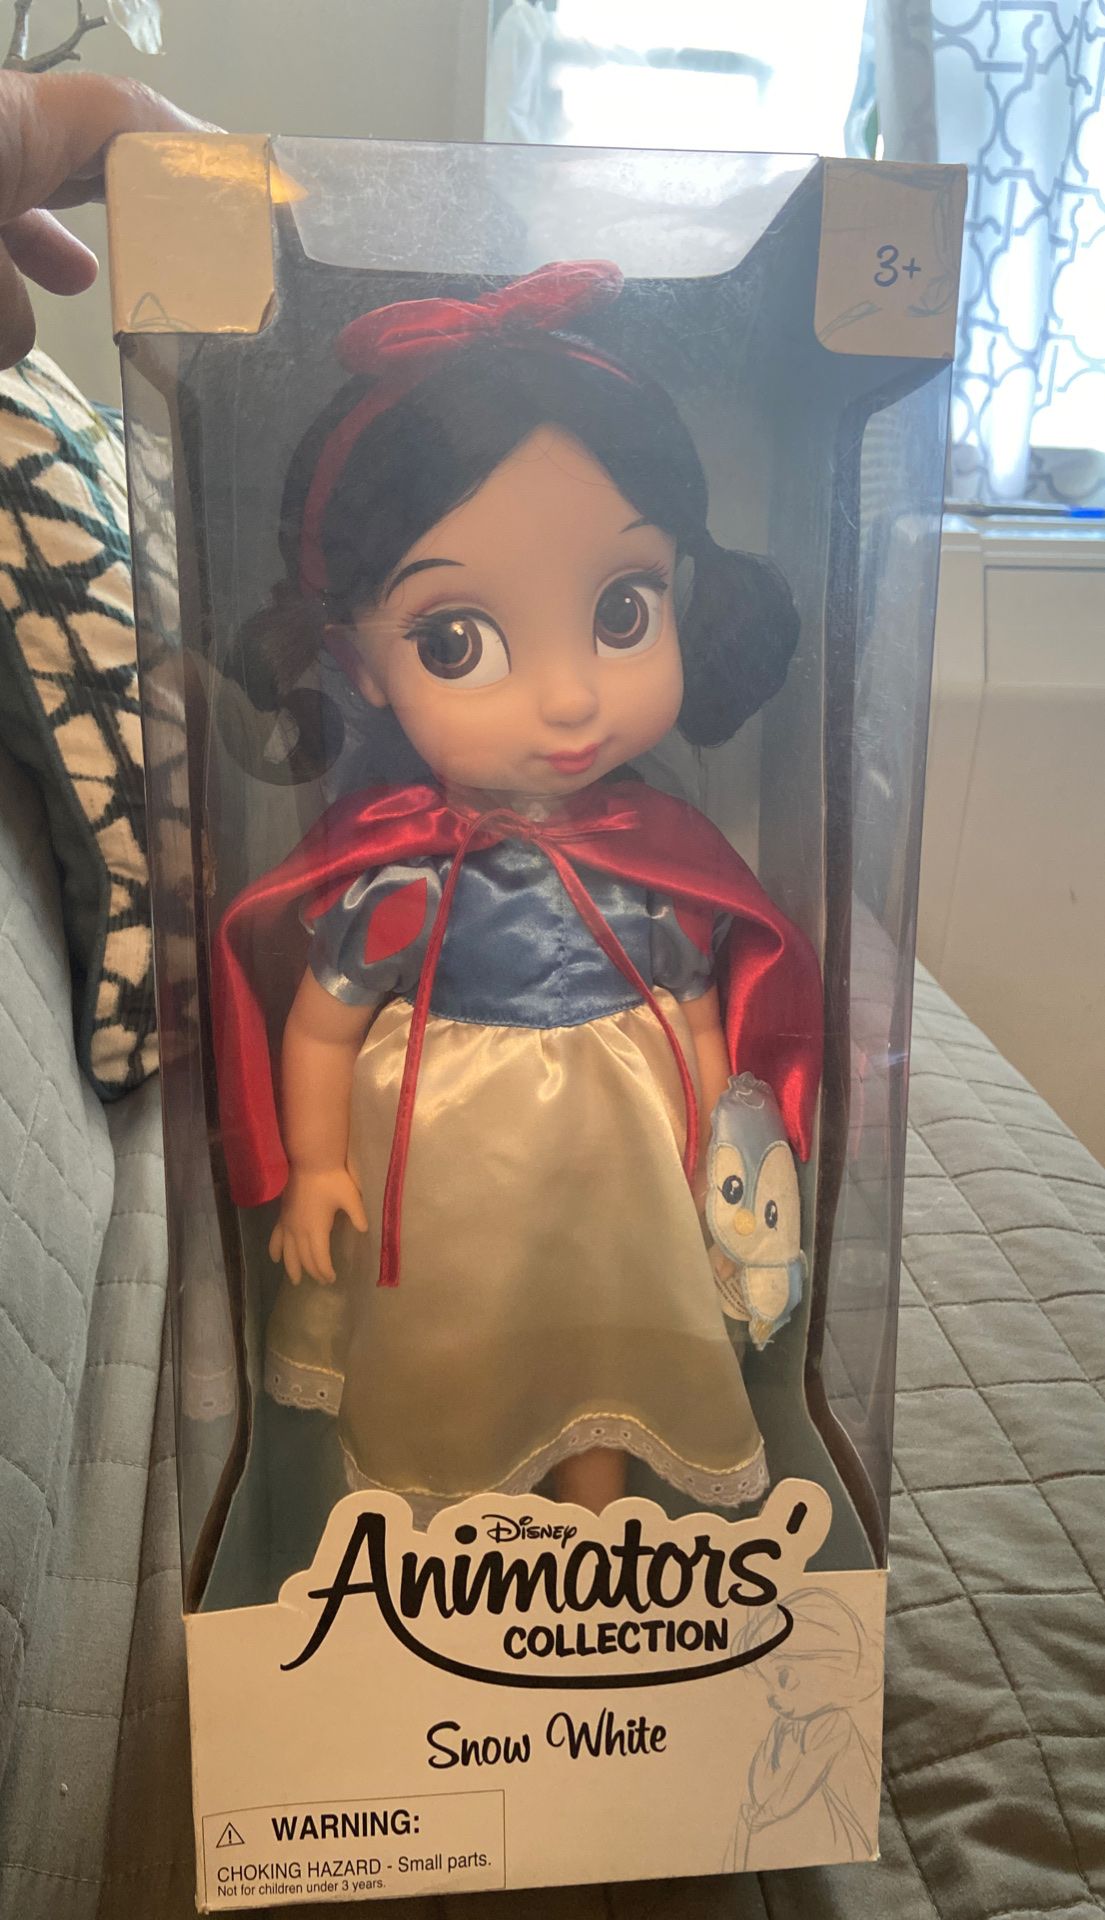 Disney animator collection Snow White